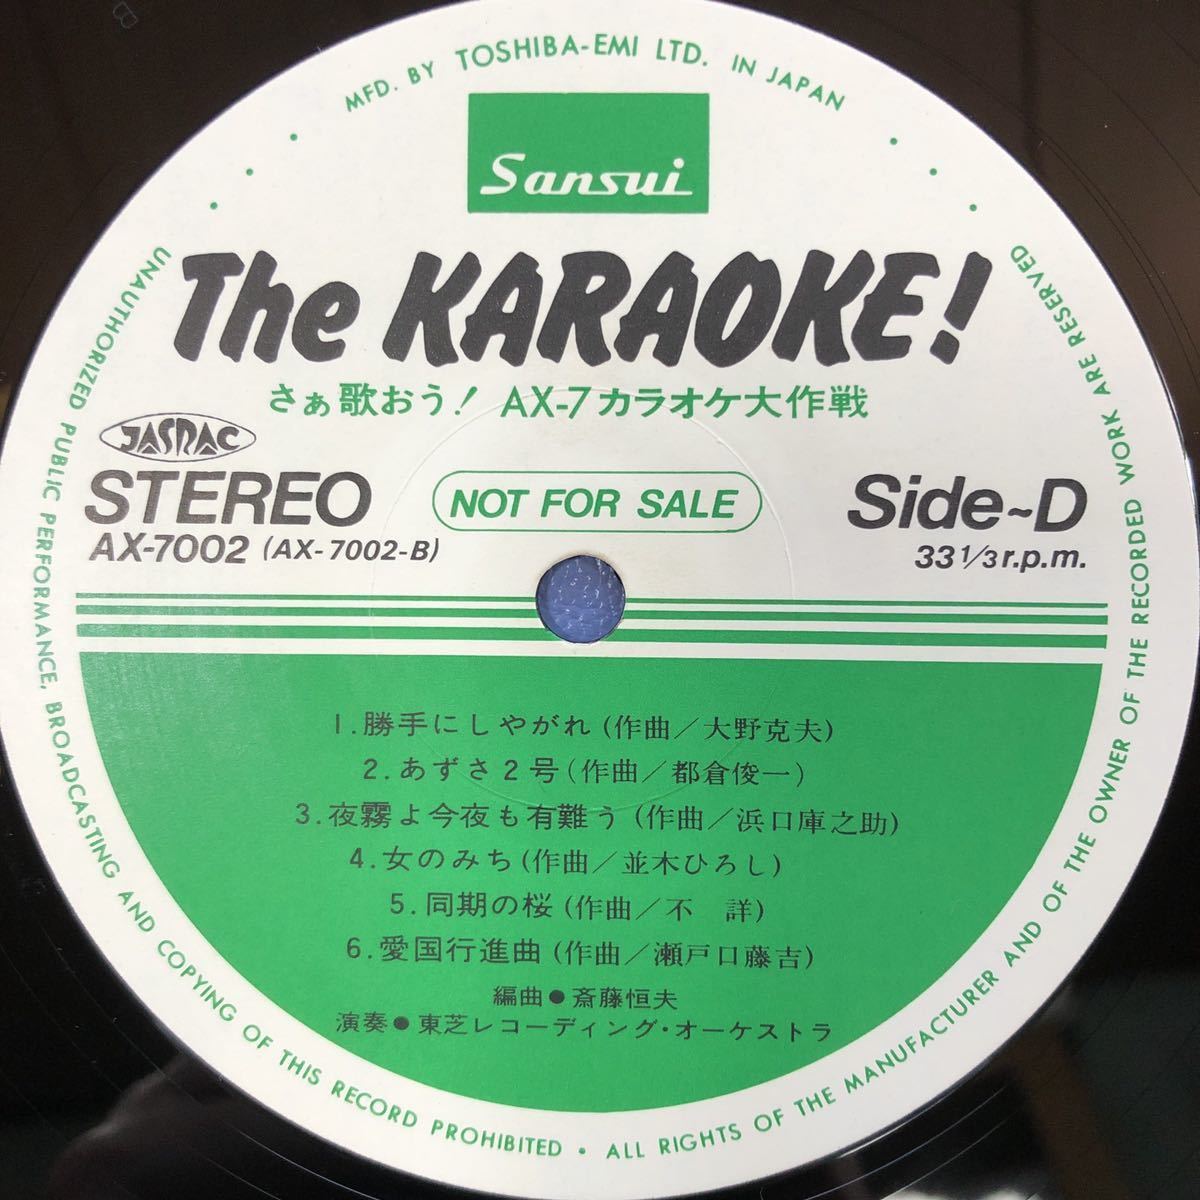 The Karaoke!.....!AX-7 караоке Daisaku битва 2LP 2 листов комплект . гора самец три др. запись 5 пункт и больше покупка бесплатная доставка N